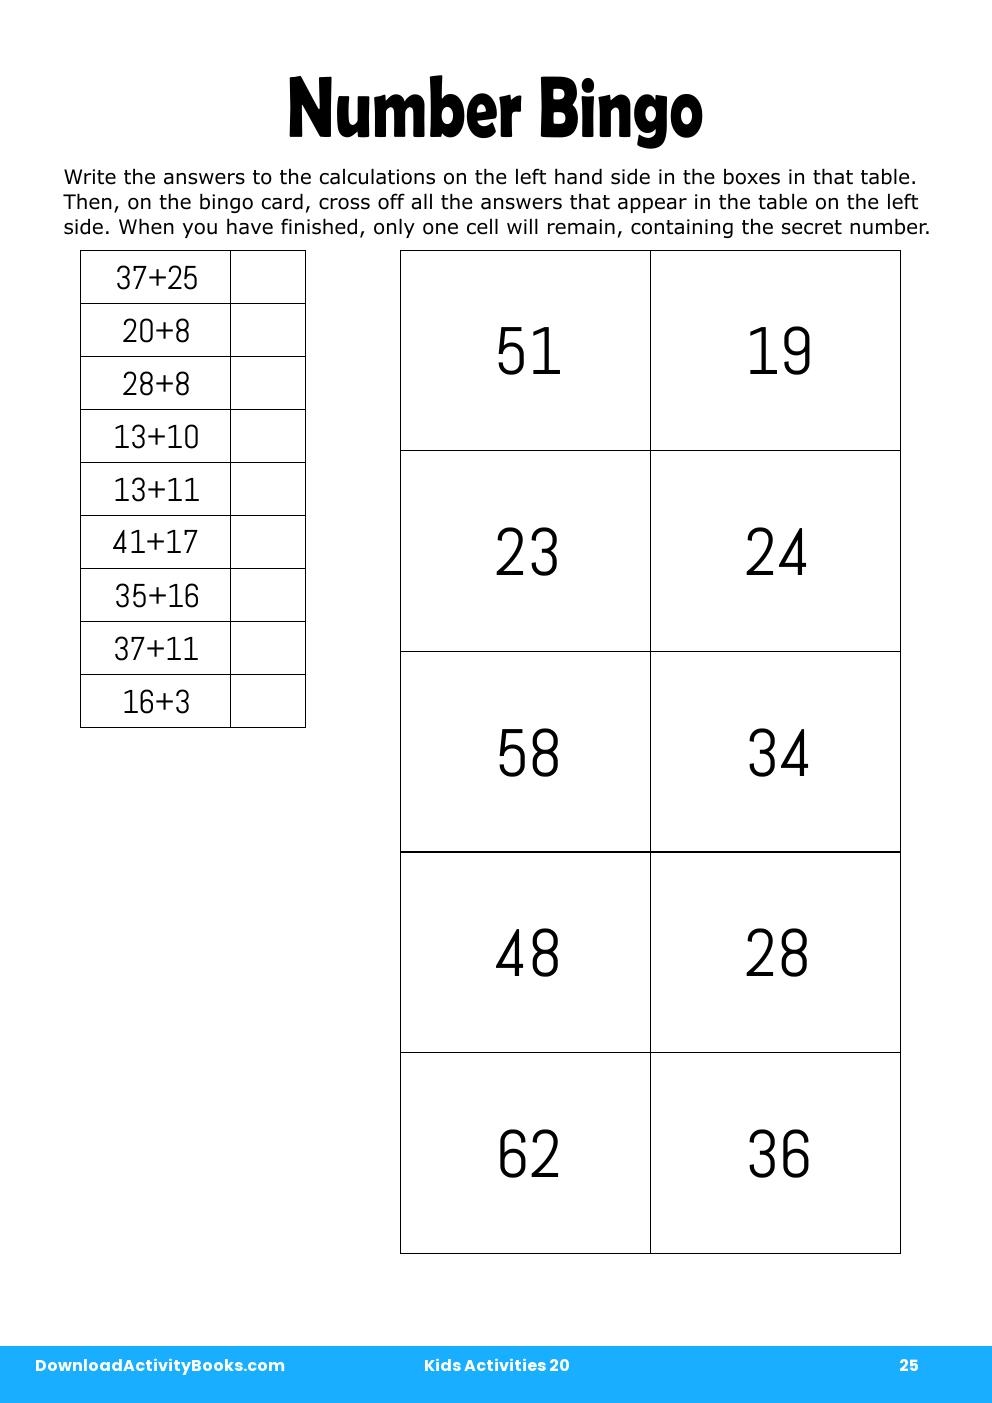 Number Bingo in Kids Activities 20